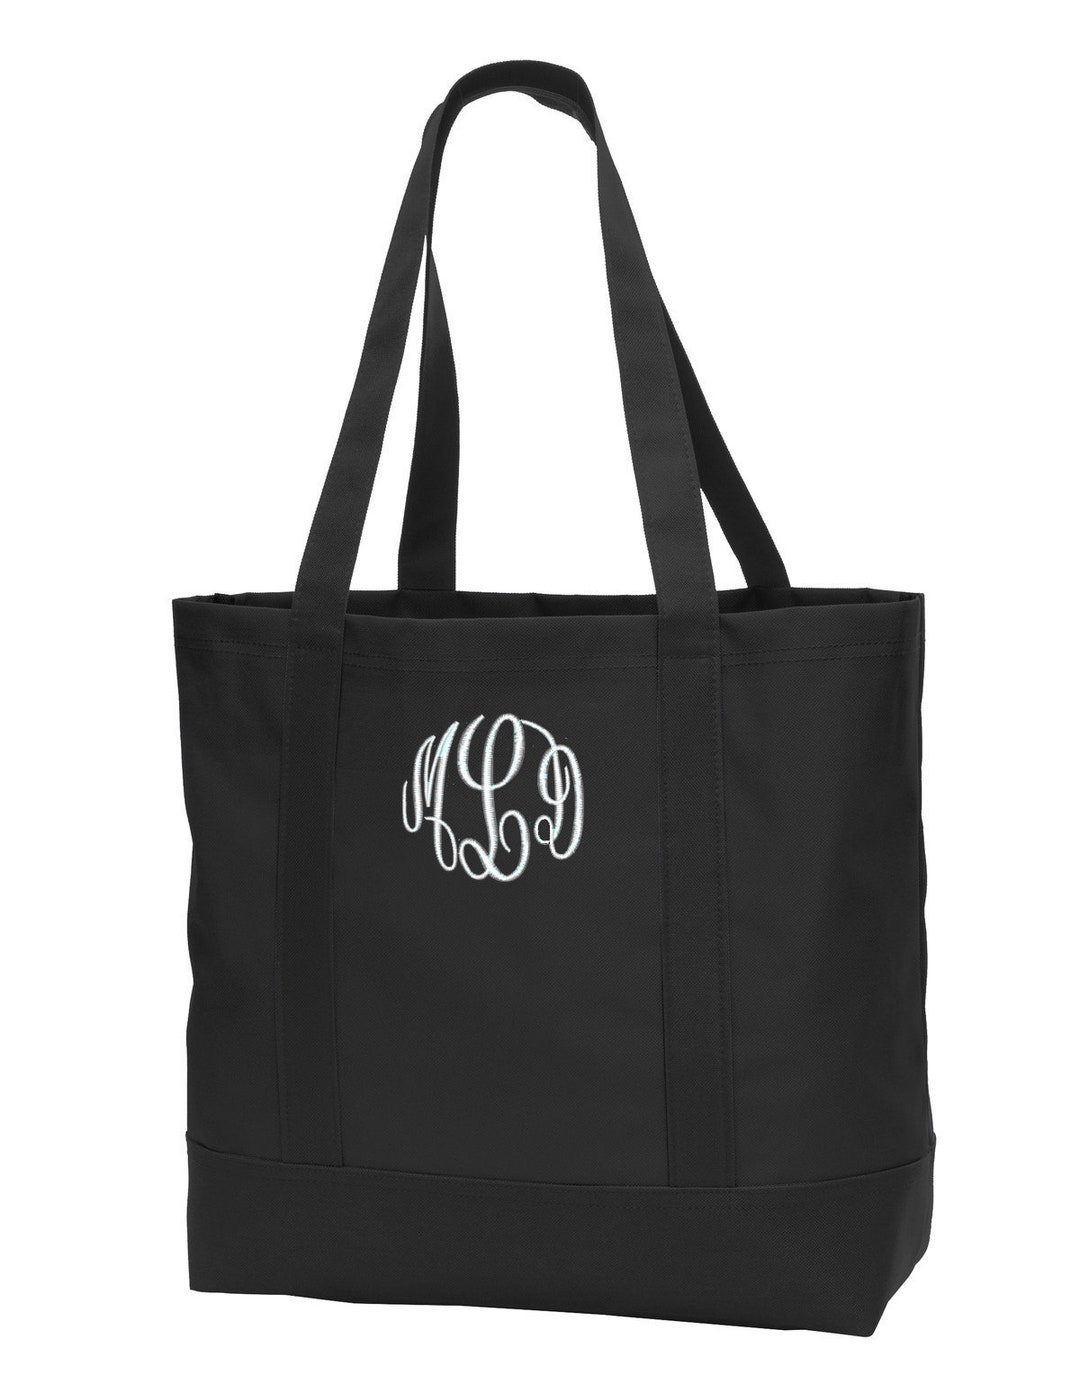 Monogrammed Black Tote Bag, Custom Tote Bag, Bridesmaid Gift ...